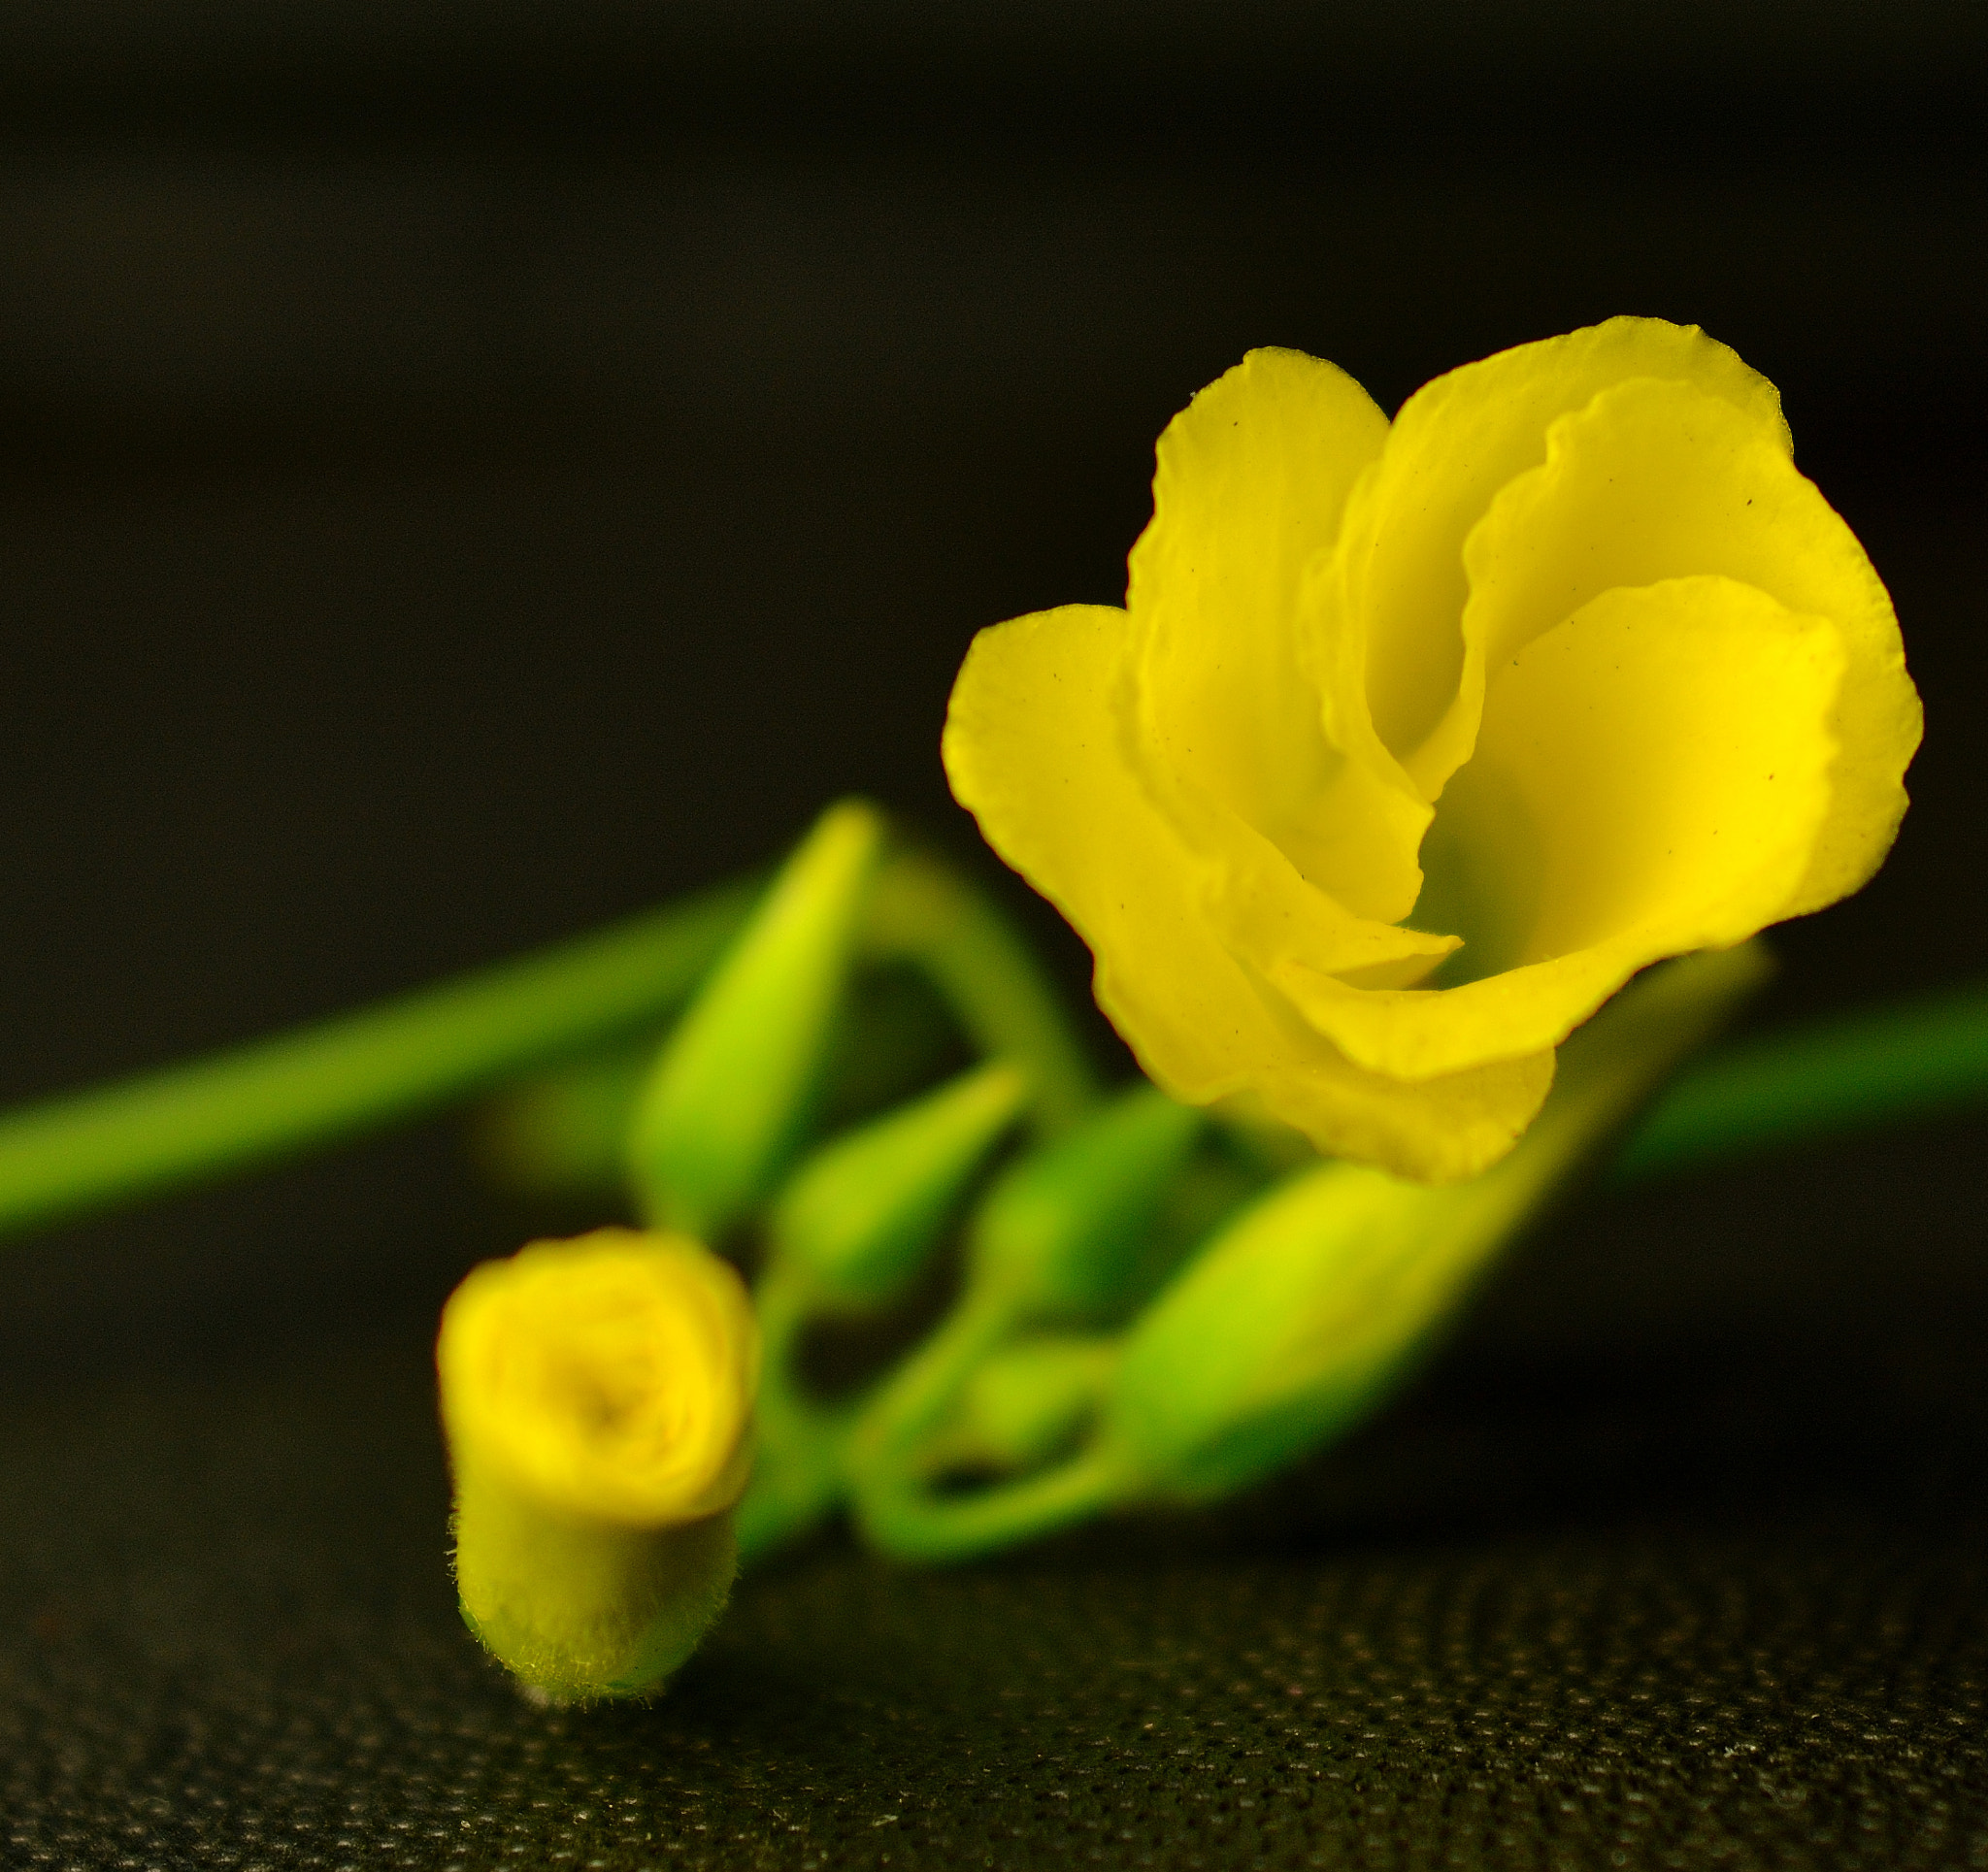 AF Zoom-Nikkor 28-85mm f/3.5-4.5 sample photo. Springtime flower photography